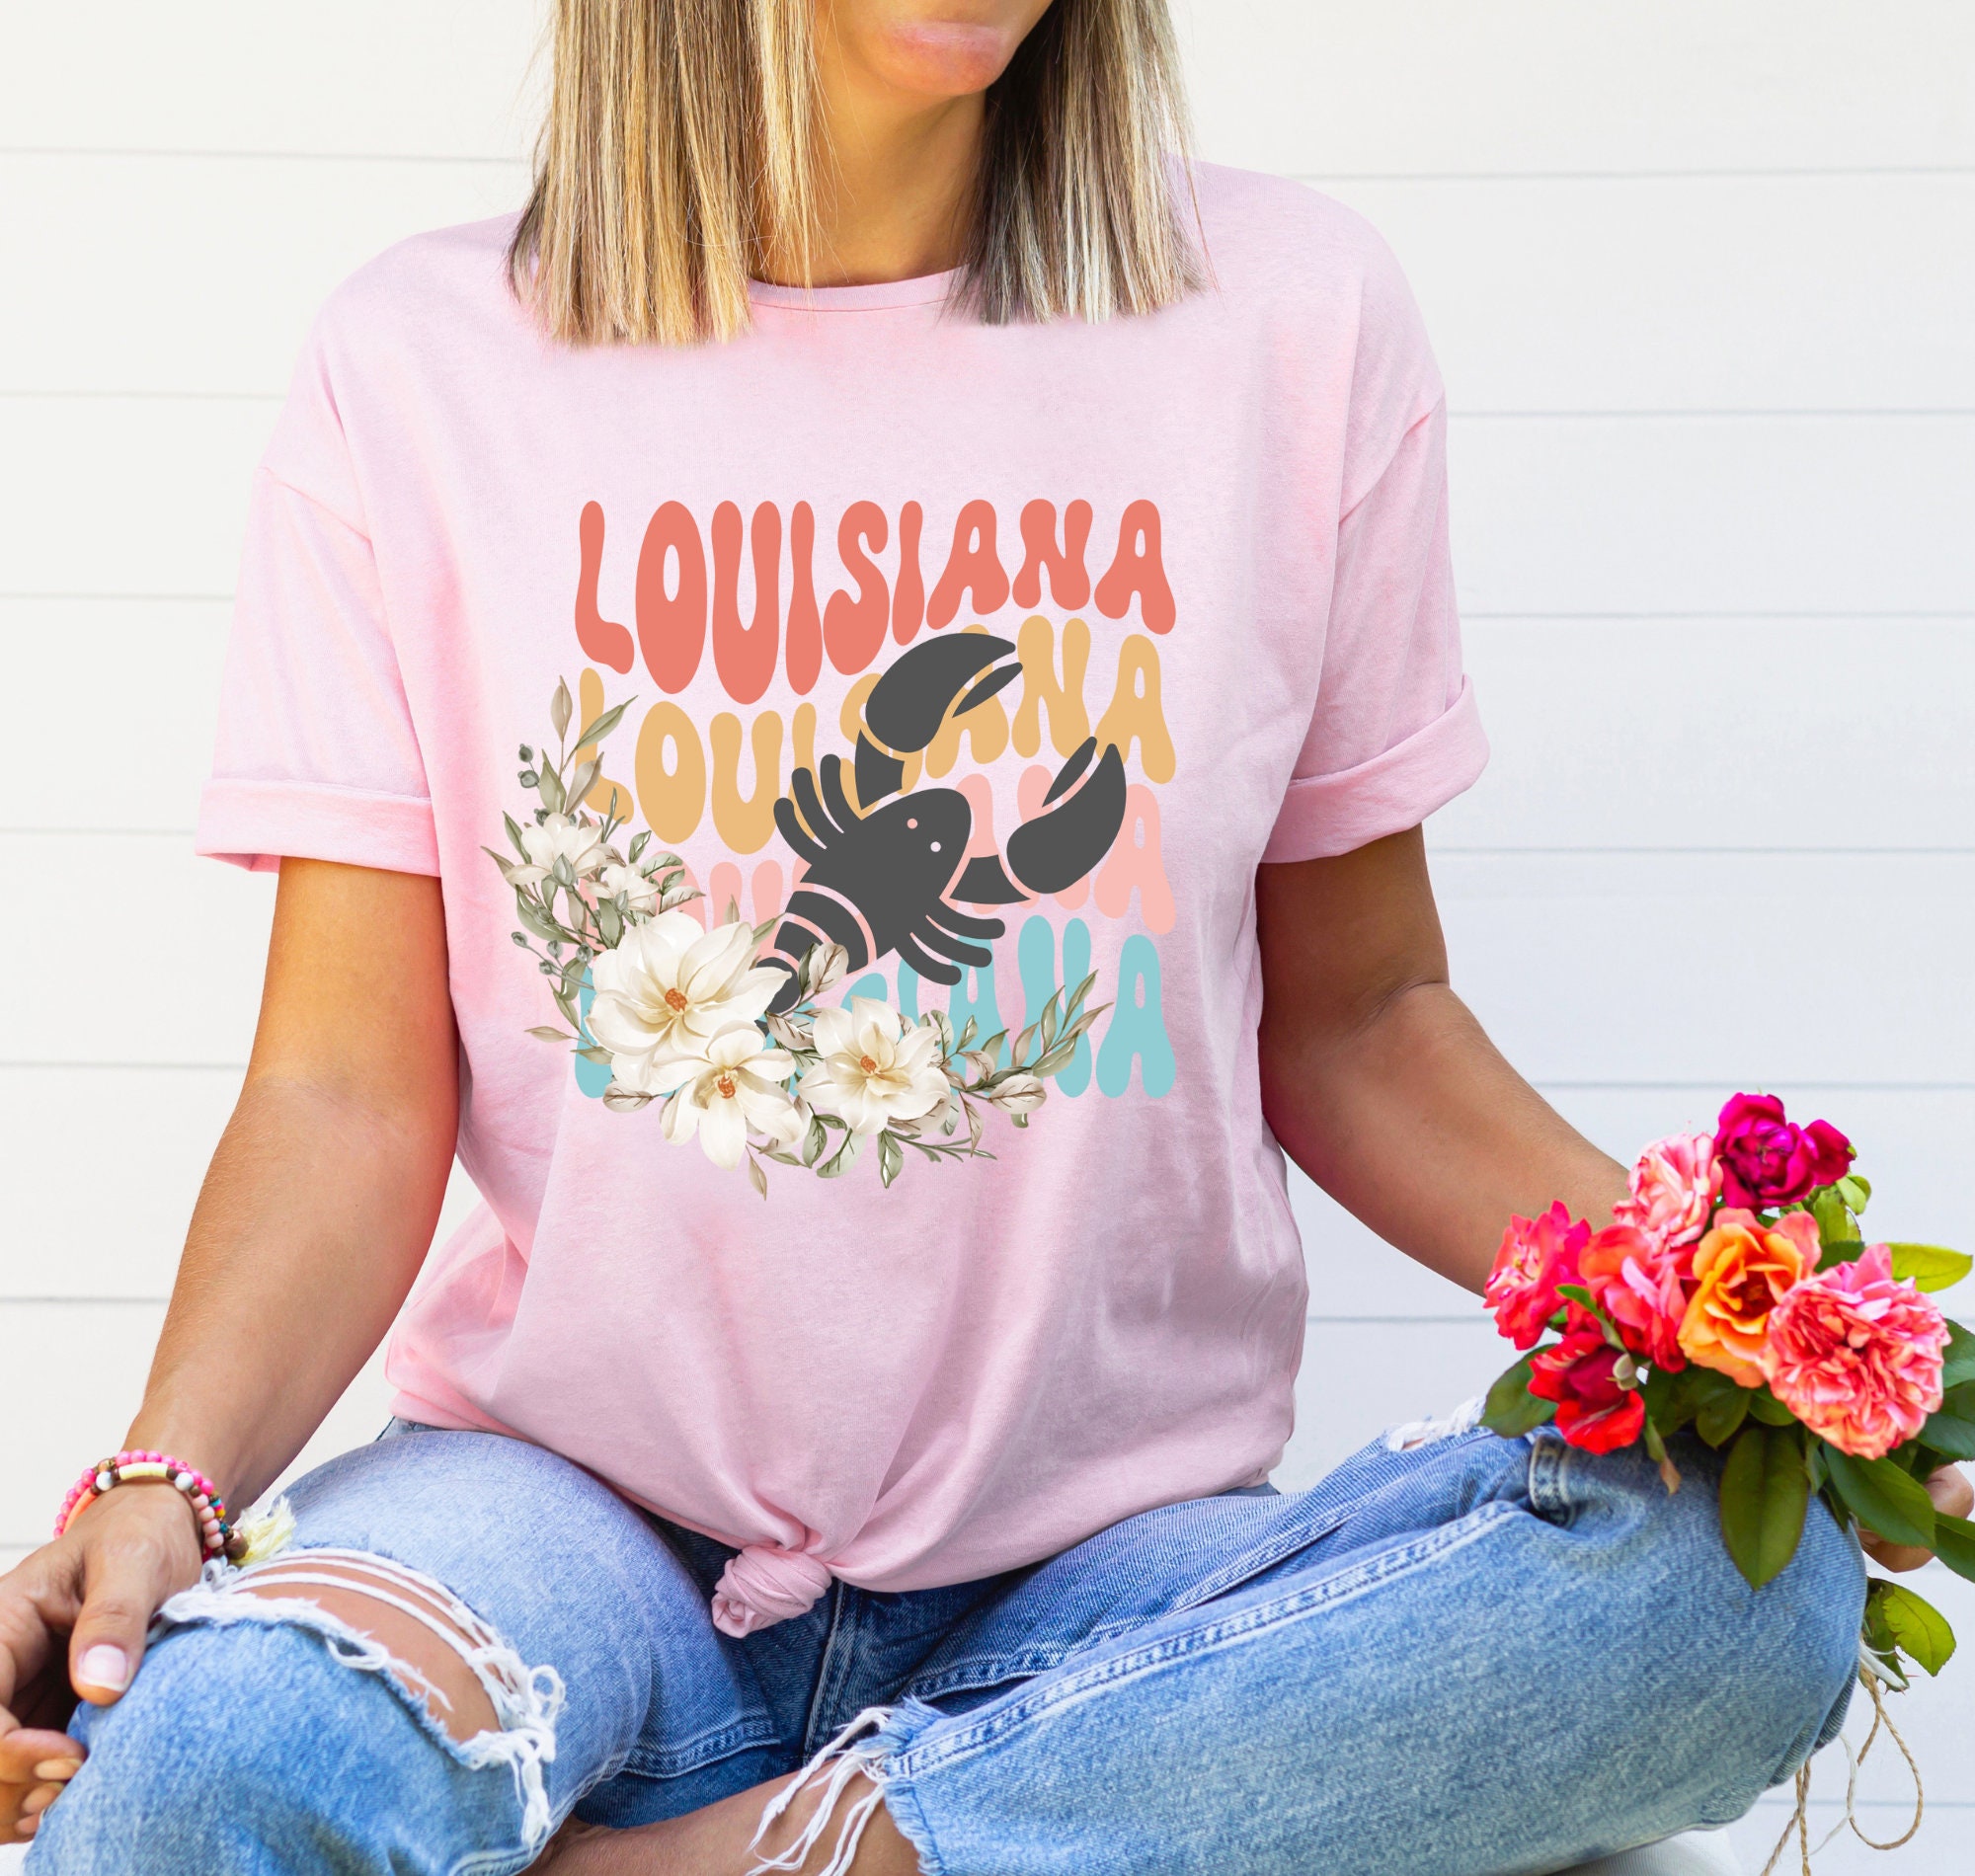  Womens Funny Louisiana Shirts Just a Louisiana girl in